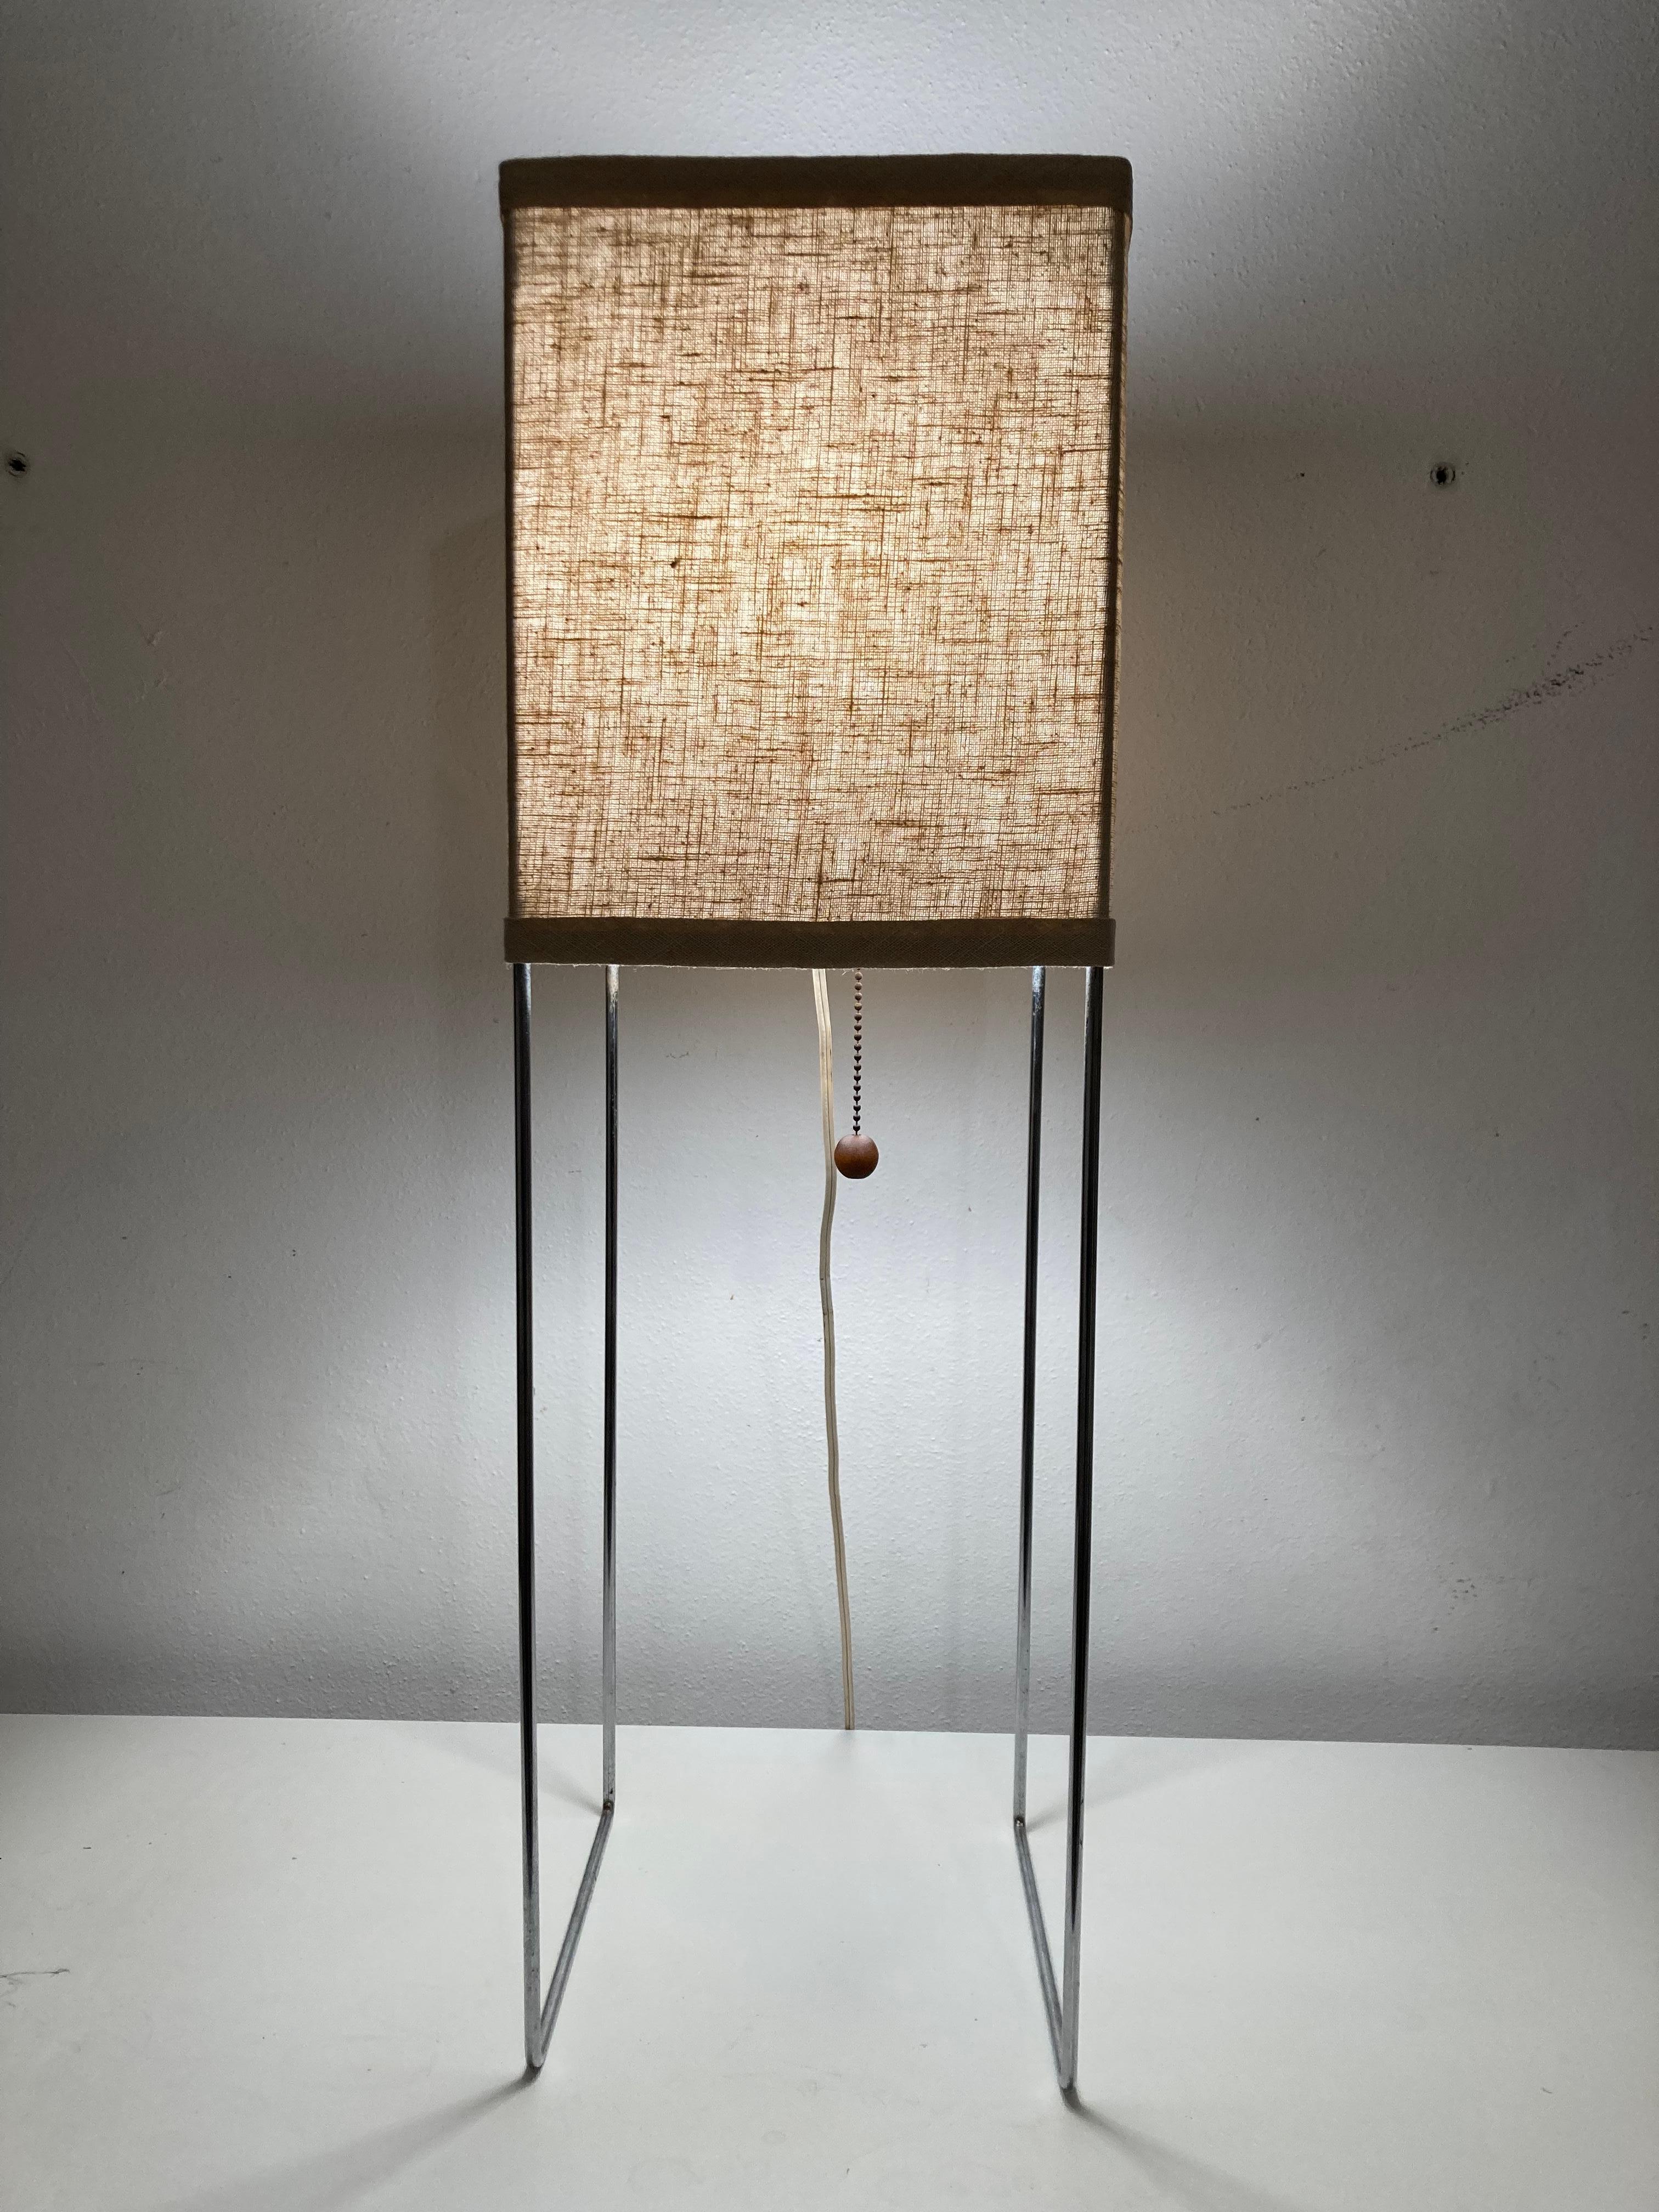 Lampe de table George Nelson & Associates Kite fabriquée par Howard Miller. 
L'abat-jour a été récemment remplacé. Le chrome n'a pas été nettoyé et présente une usure. Veuillez voir les photos.